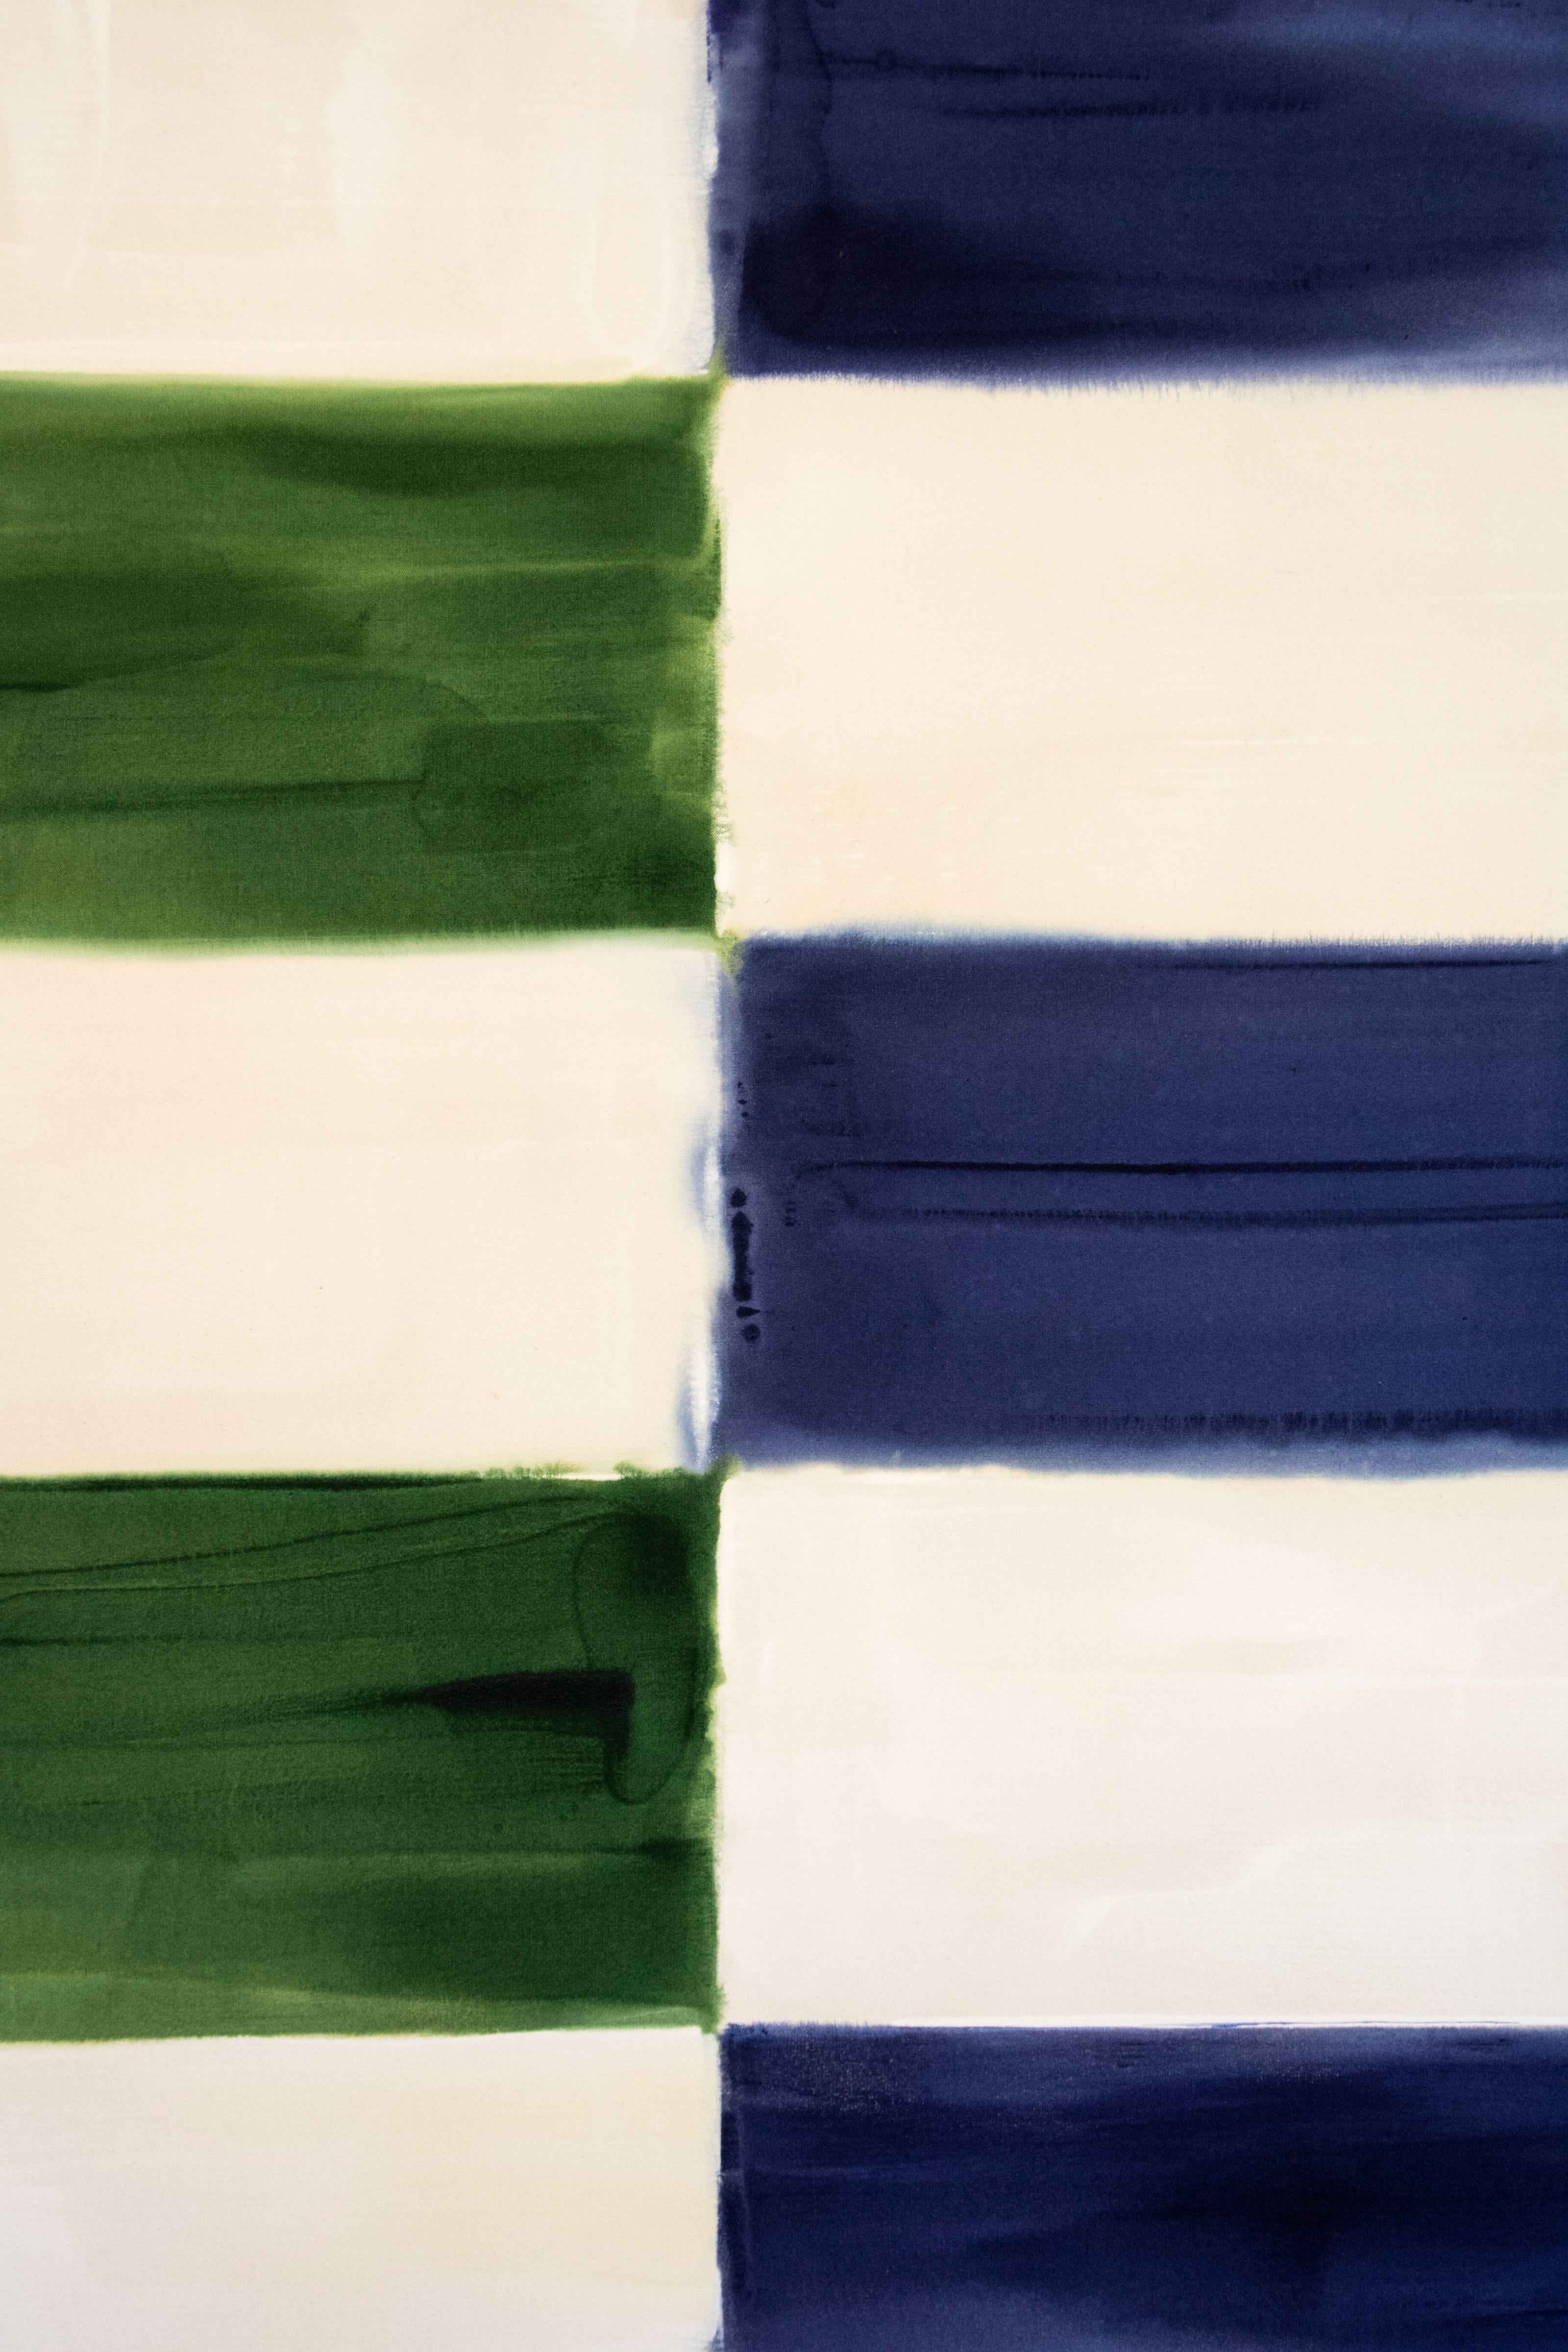 Judd - groß, blau, grün, abstrakt, geometrische Komposition, Acryl auf Leinwand – Painting von Milly Ristvedt